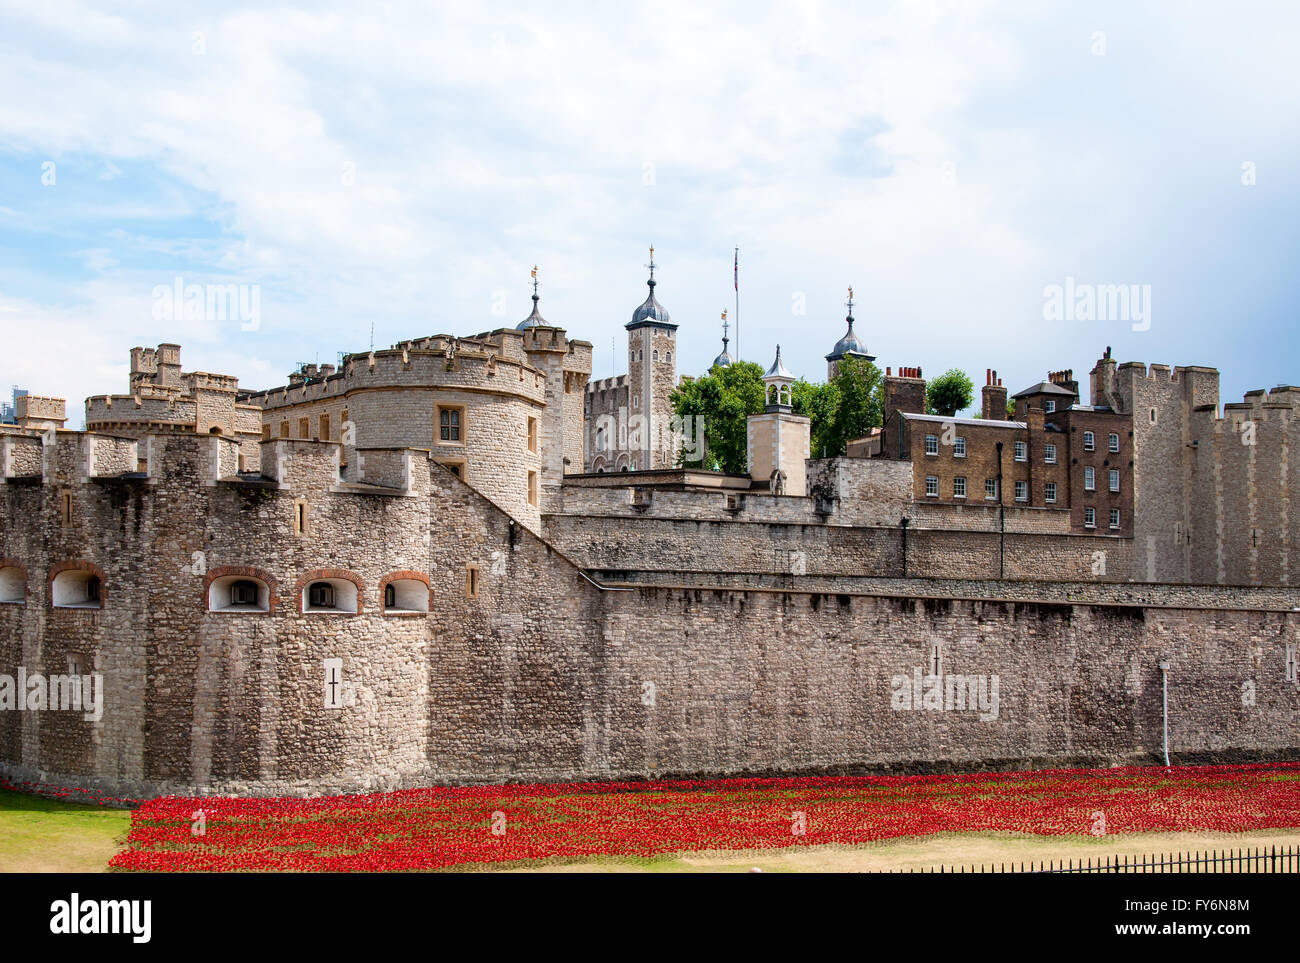 La Torre di Londra, il castello medievale e il carcere con un aiuola di fiori di colore rosso Foto Stock